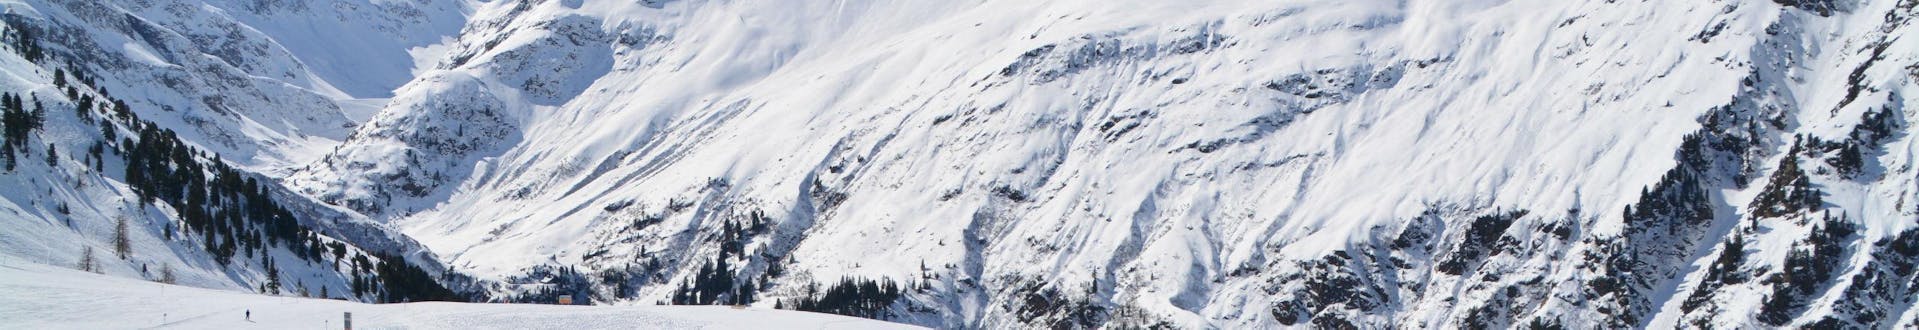 Ein Blick auf die Skipisten von St. Anton, auch bekannt als die Wiege des alpinen Skifahrens, wo örtliche Skischulen für Wintersportfans die das Skifahren lernen wollen Skikurse anbieten.